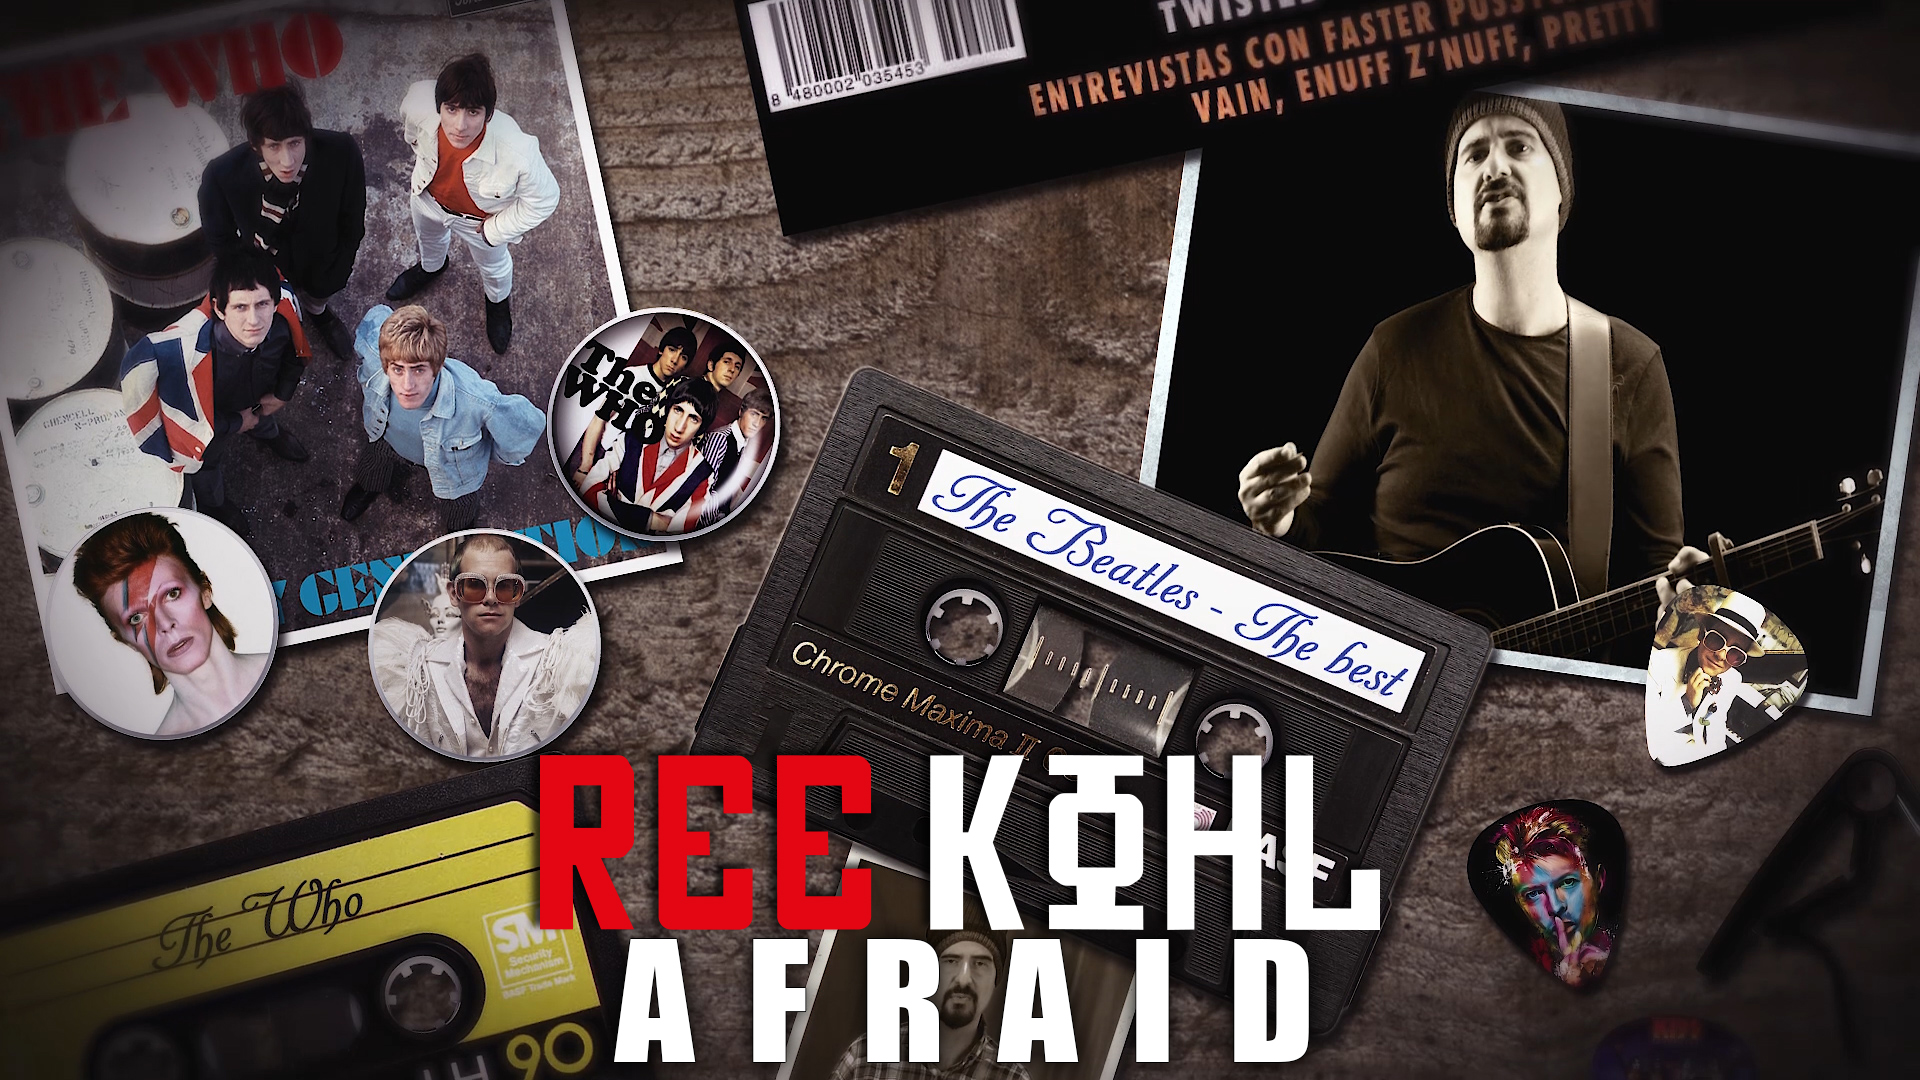 Nuevo videoclip Ree Kohl - Afraid perteneciente al último disco "Inside". Es un precioso tema Pop con muy buenos arreglos orquestales.